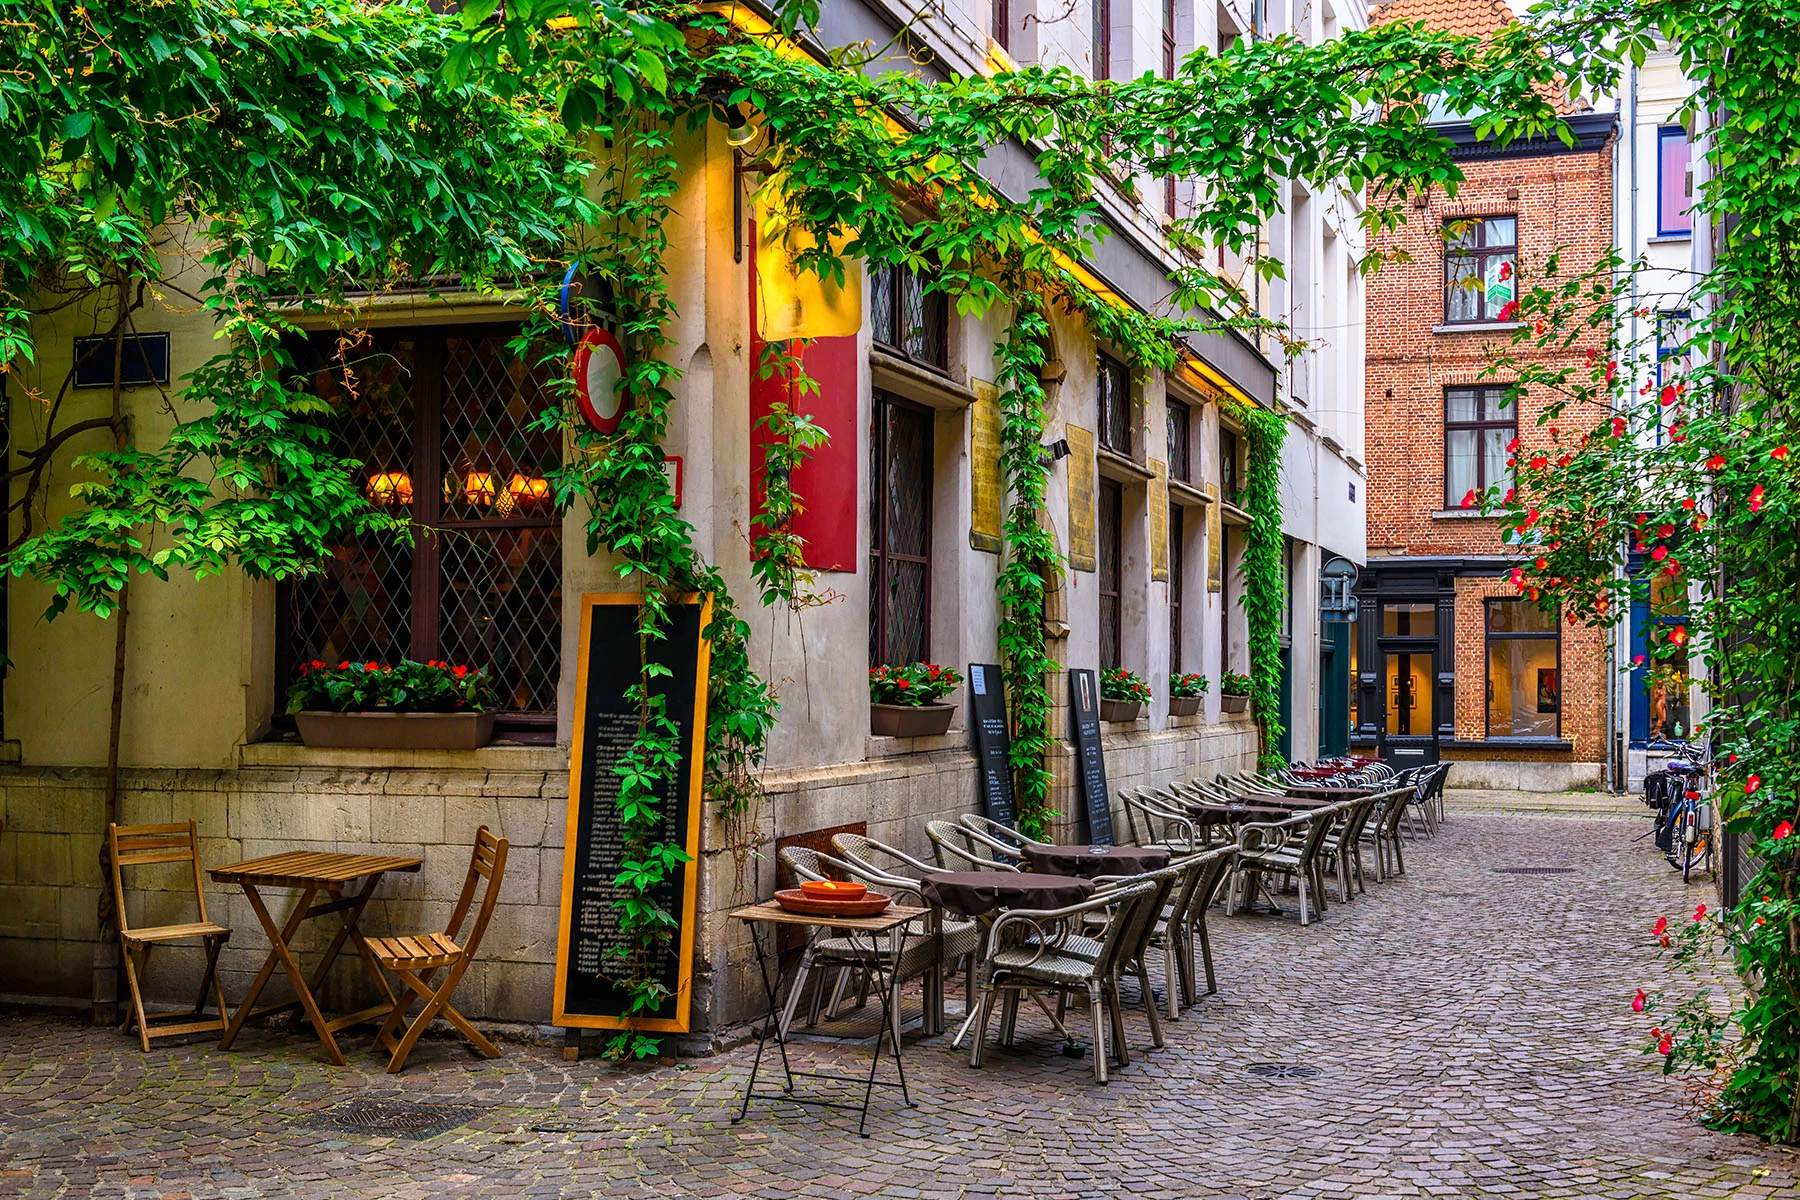 A café on a quiet street in Antwerp's city center